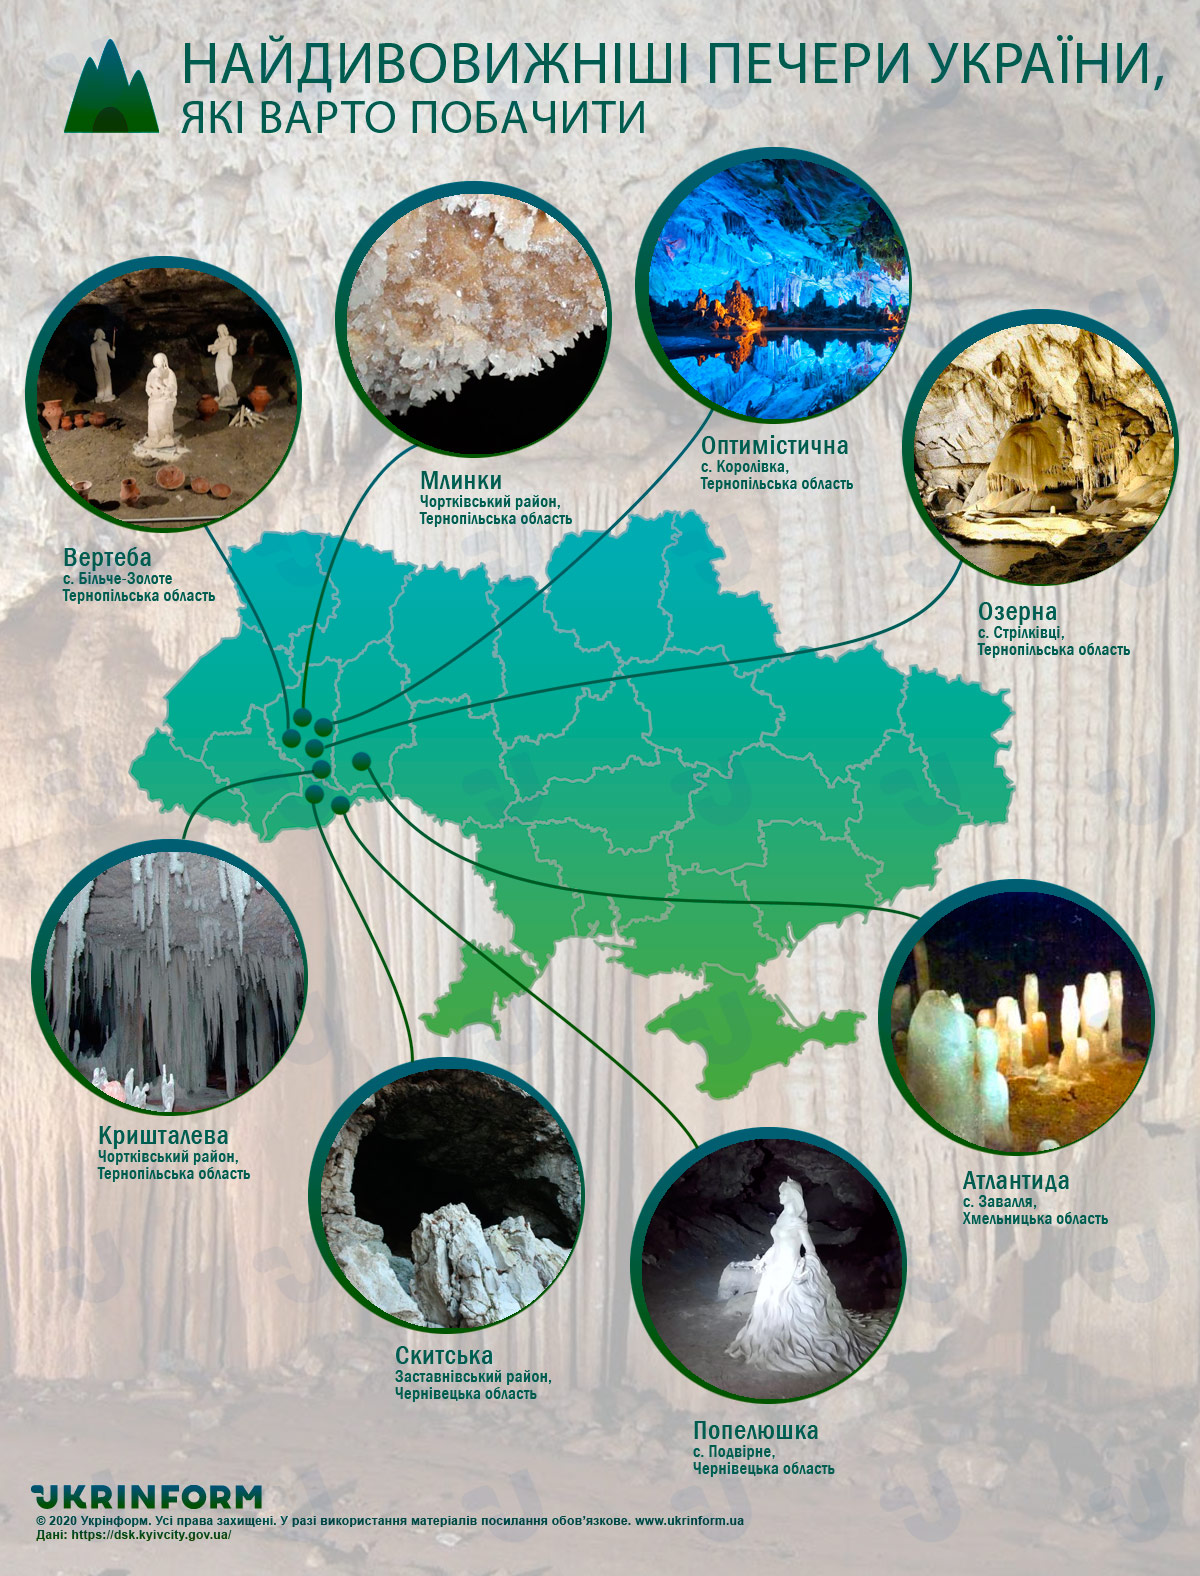 Попелюшка і Скитська з Буковини потрапили до переліку найдивовижніших печер України, які варто побачити. Інфографіка